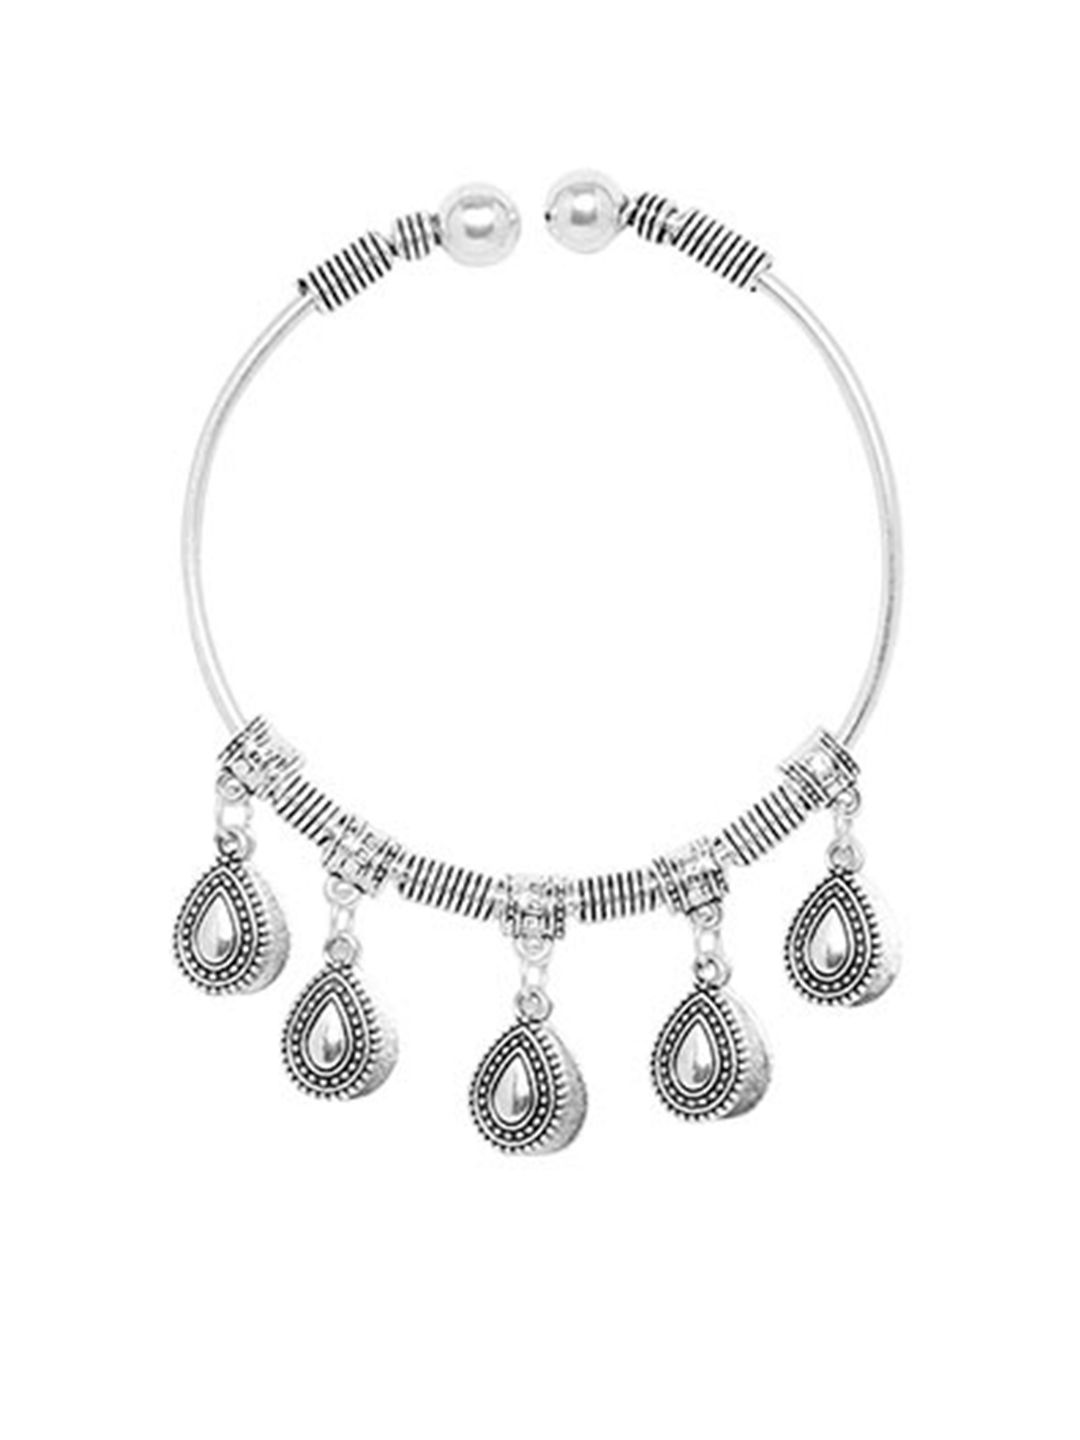 ZeroKaata Women Silver-Toned Oxidized Drop Charms Bangle-Style Bracelet Price in India